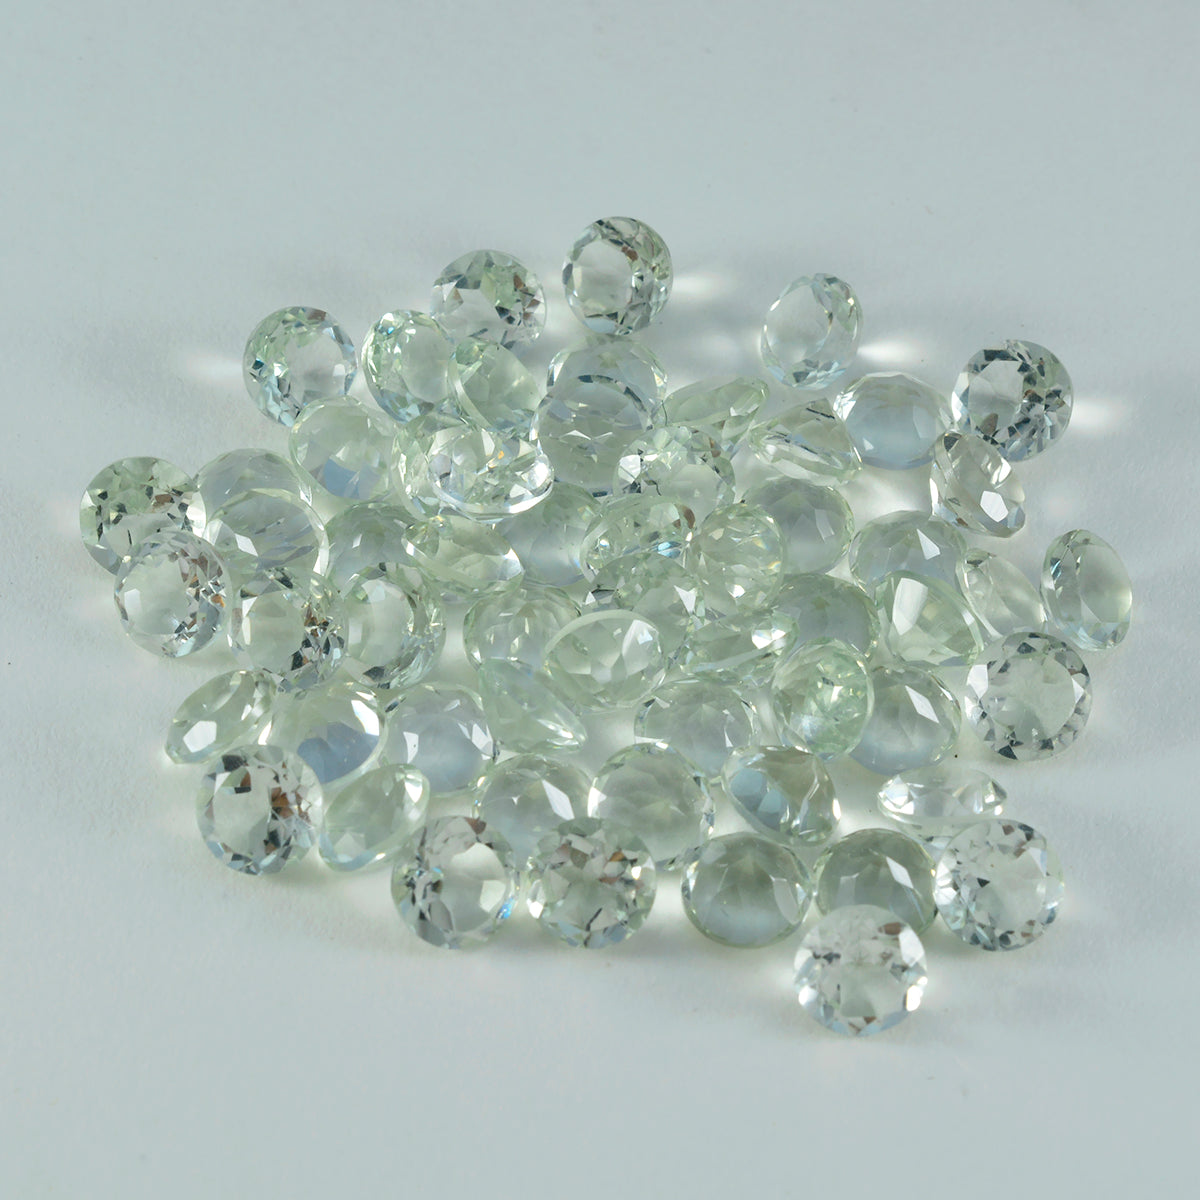 Riyogems 1PC Green Amethyst Faceted 3x3 mm Round Shape pretty Quality Gemstone